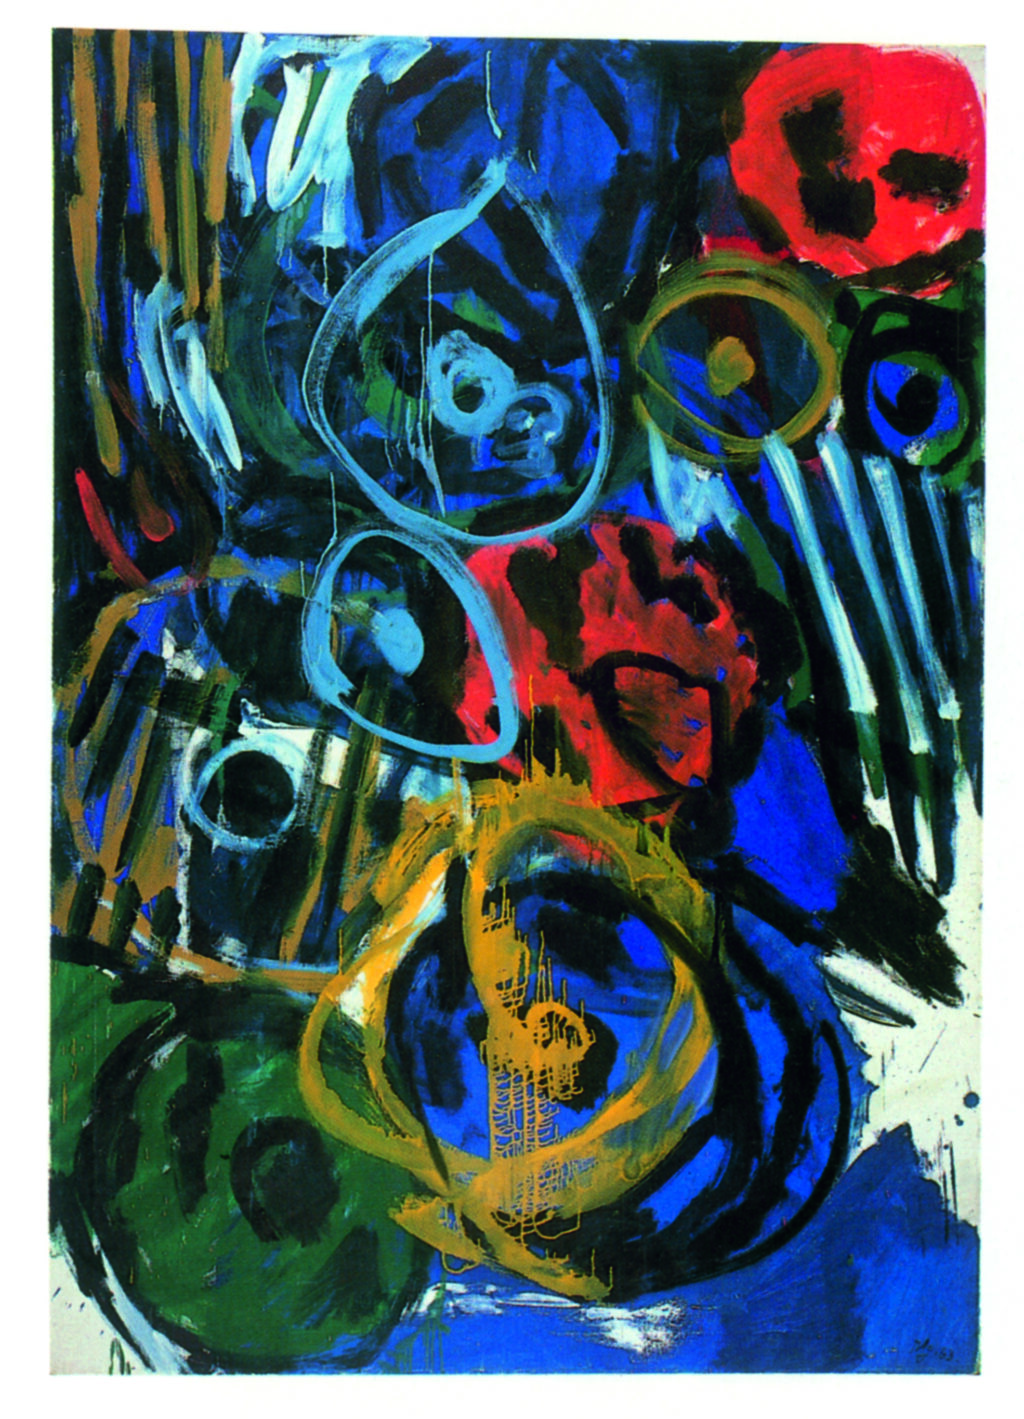 <p>KUNSTHANDEL WOLFGANG WERNER </p>
<p> </p>
<p><span lang="EN-US">Ernst Wilhelm Nay (1902–1928), </span>Element Blau/Element blue, 1963, Courtesy: Kunsthandel Wolfgang Werner, Photo: Gallery</p>
